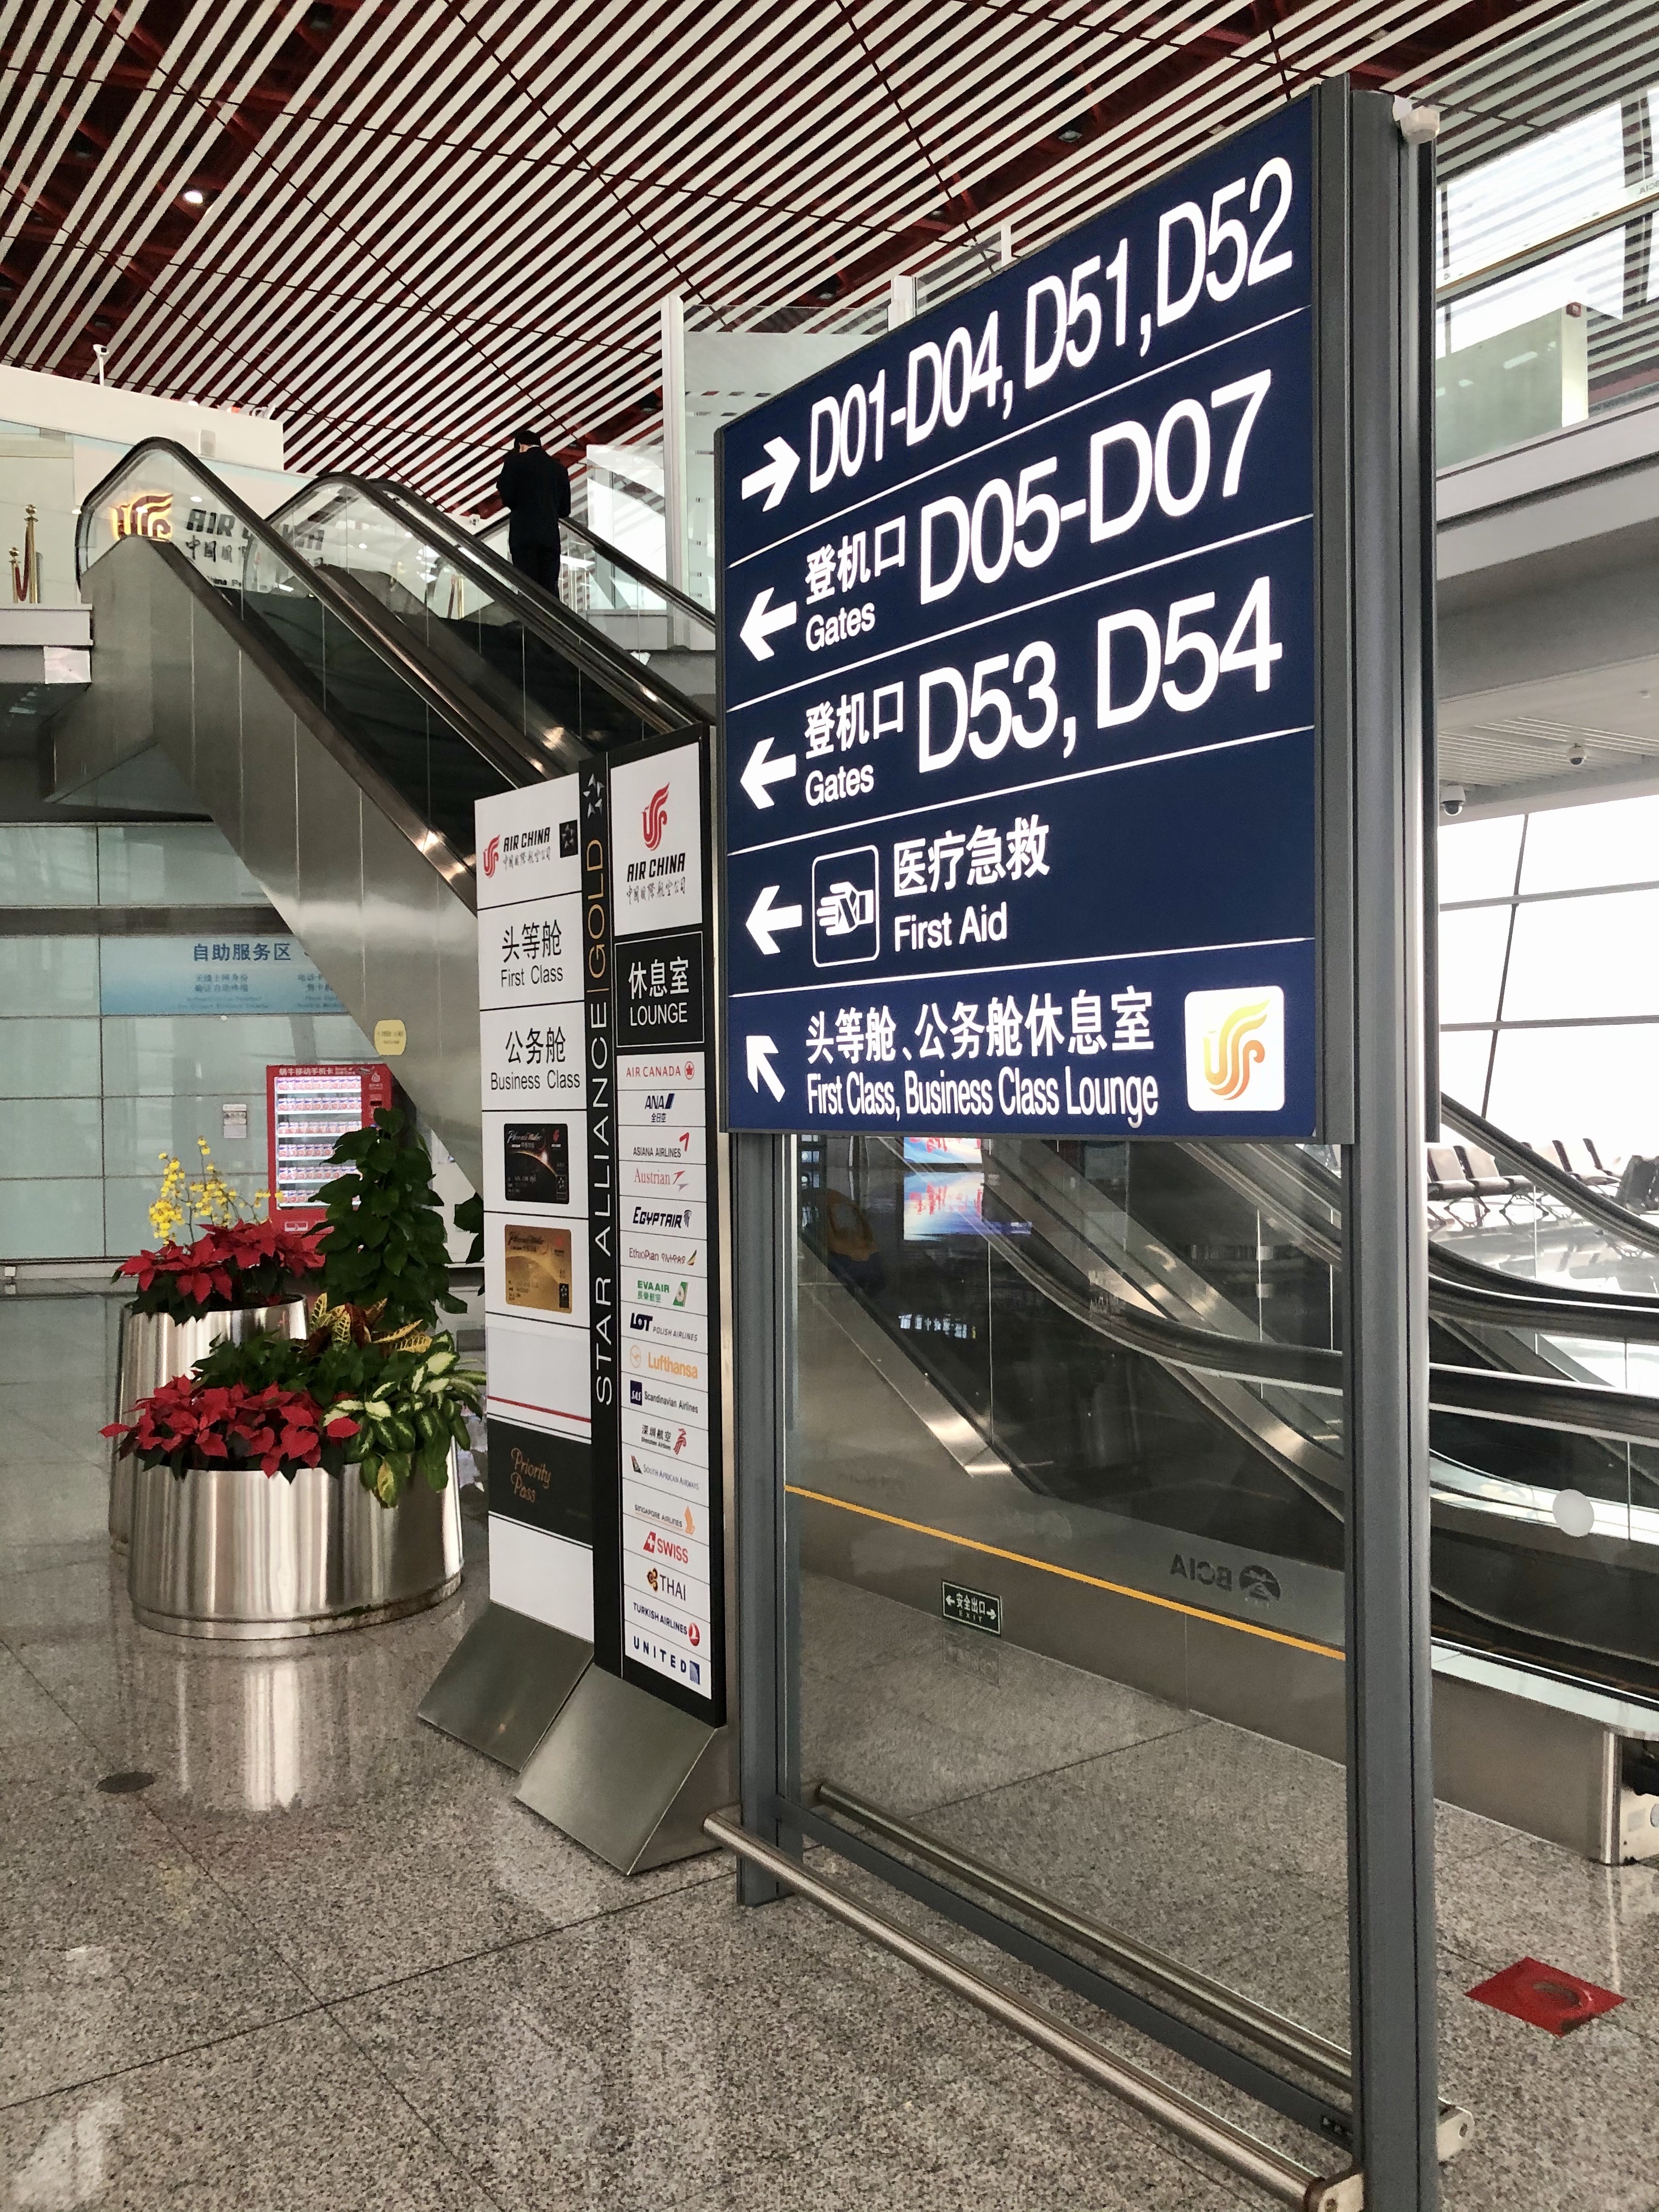 摘要一到达方式北京回成都川航折扣太低选了国航结果航旅纵横看到登机